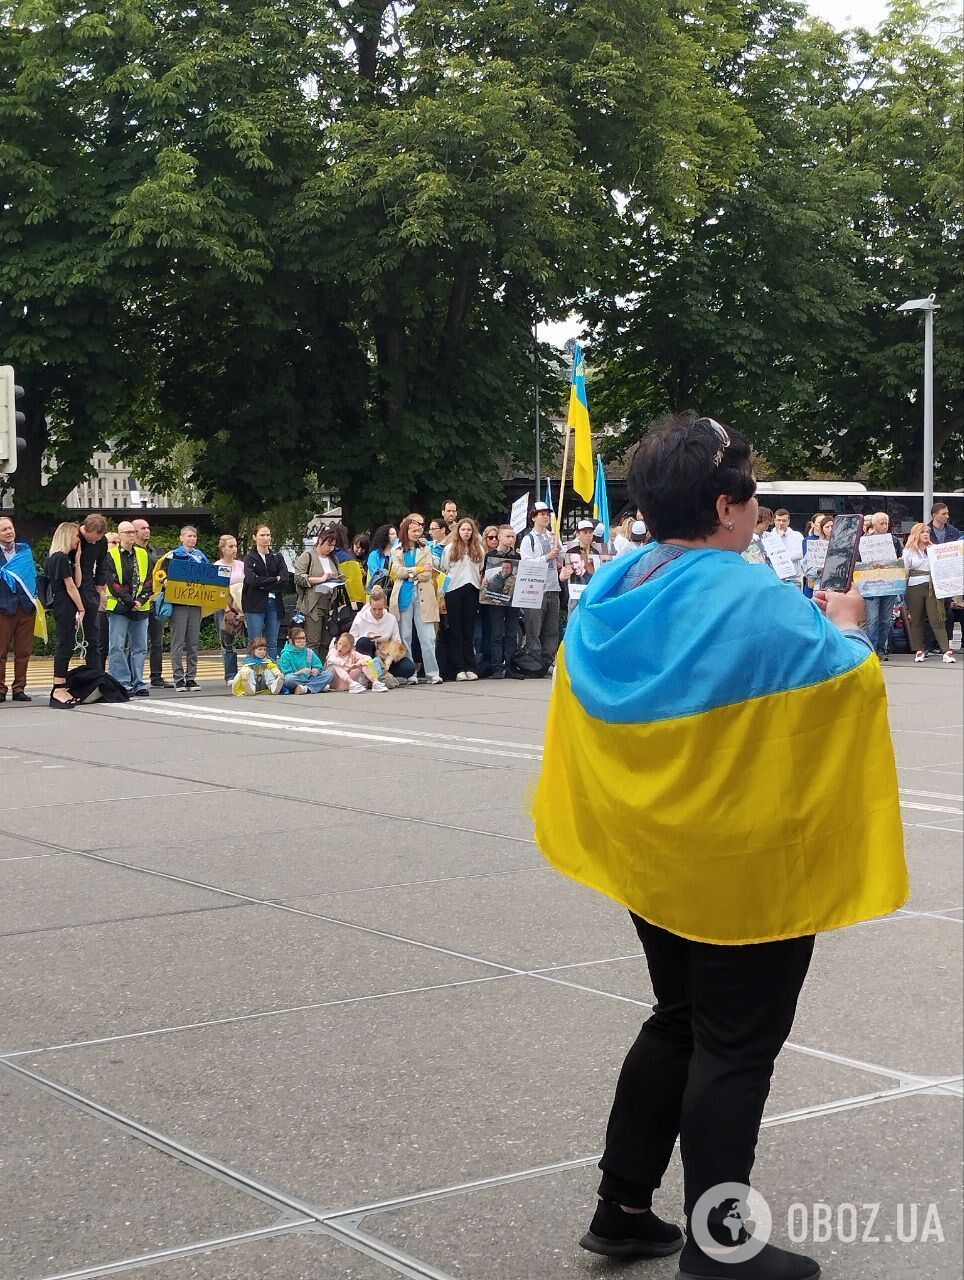 "Освободите защитников Украины!" В Швейцарии, где продолжается Саммит мира, провели акцию в поддержку пленных. Фото и видео